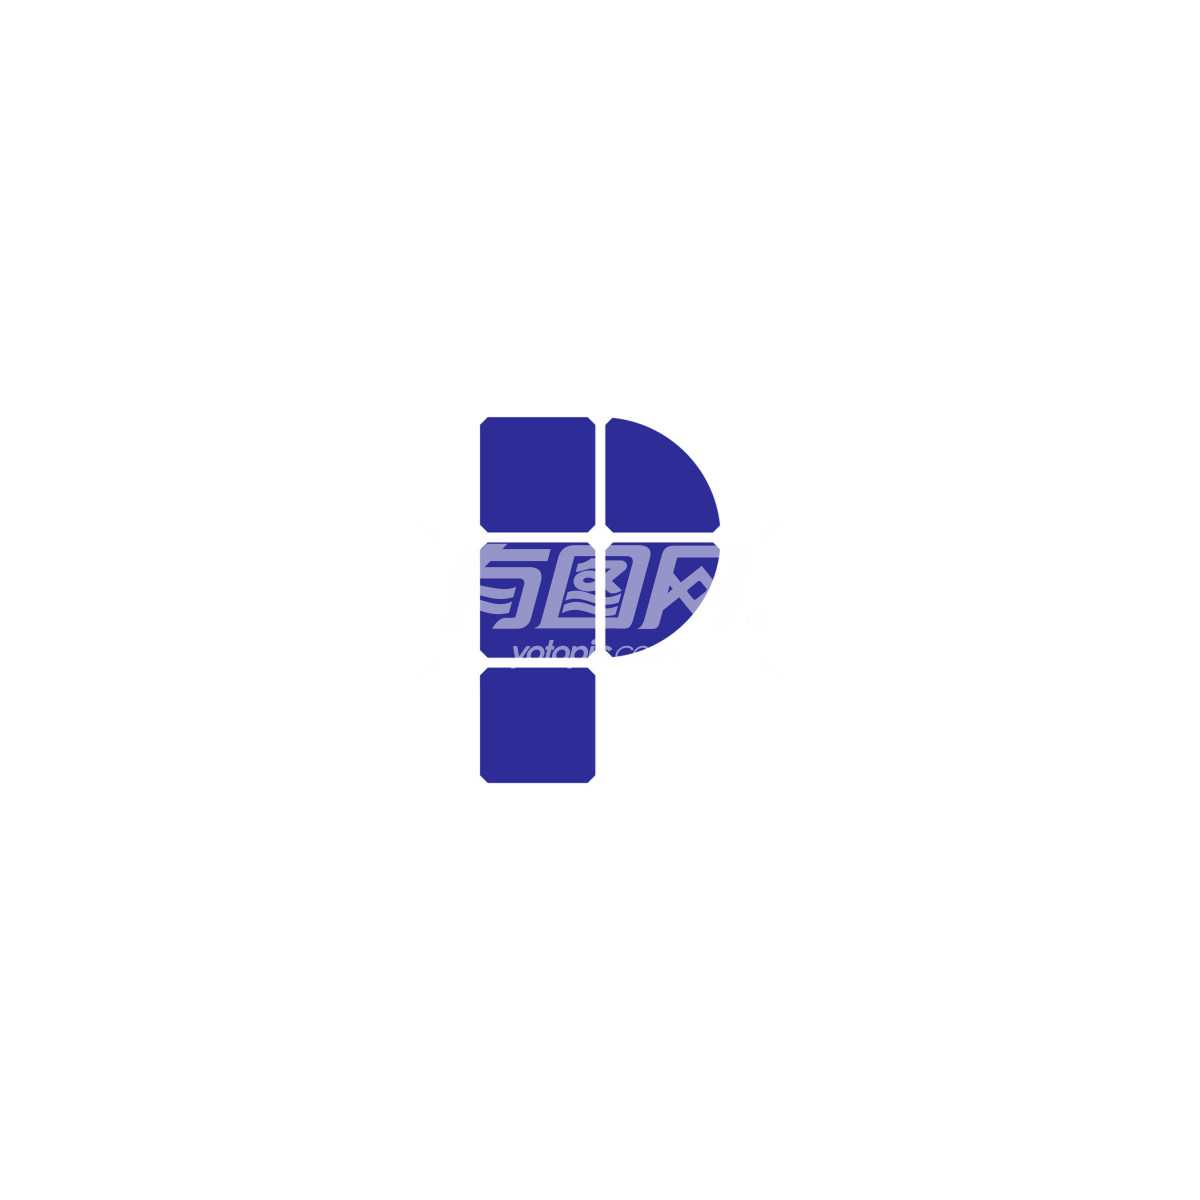 光伏新能源科技图标logo